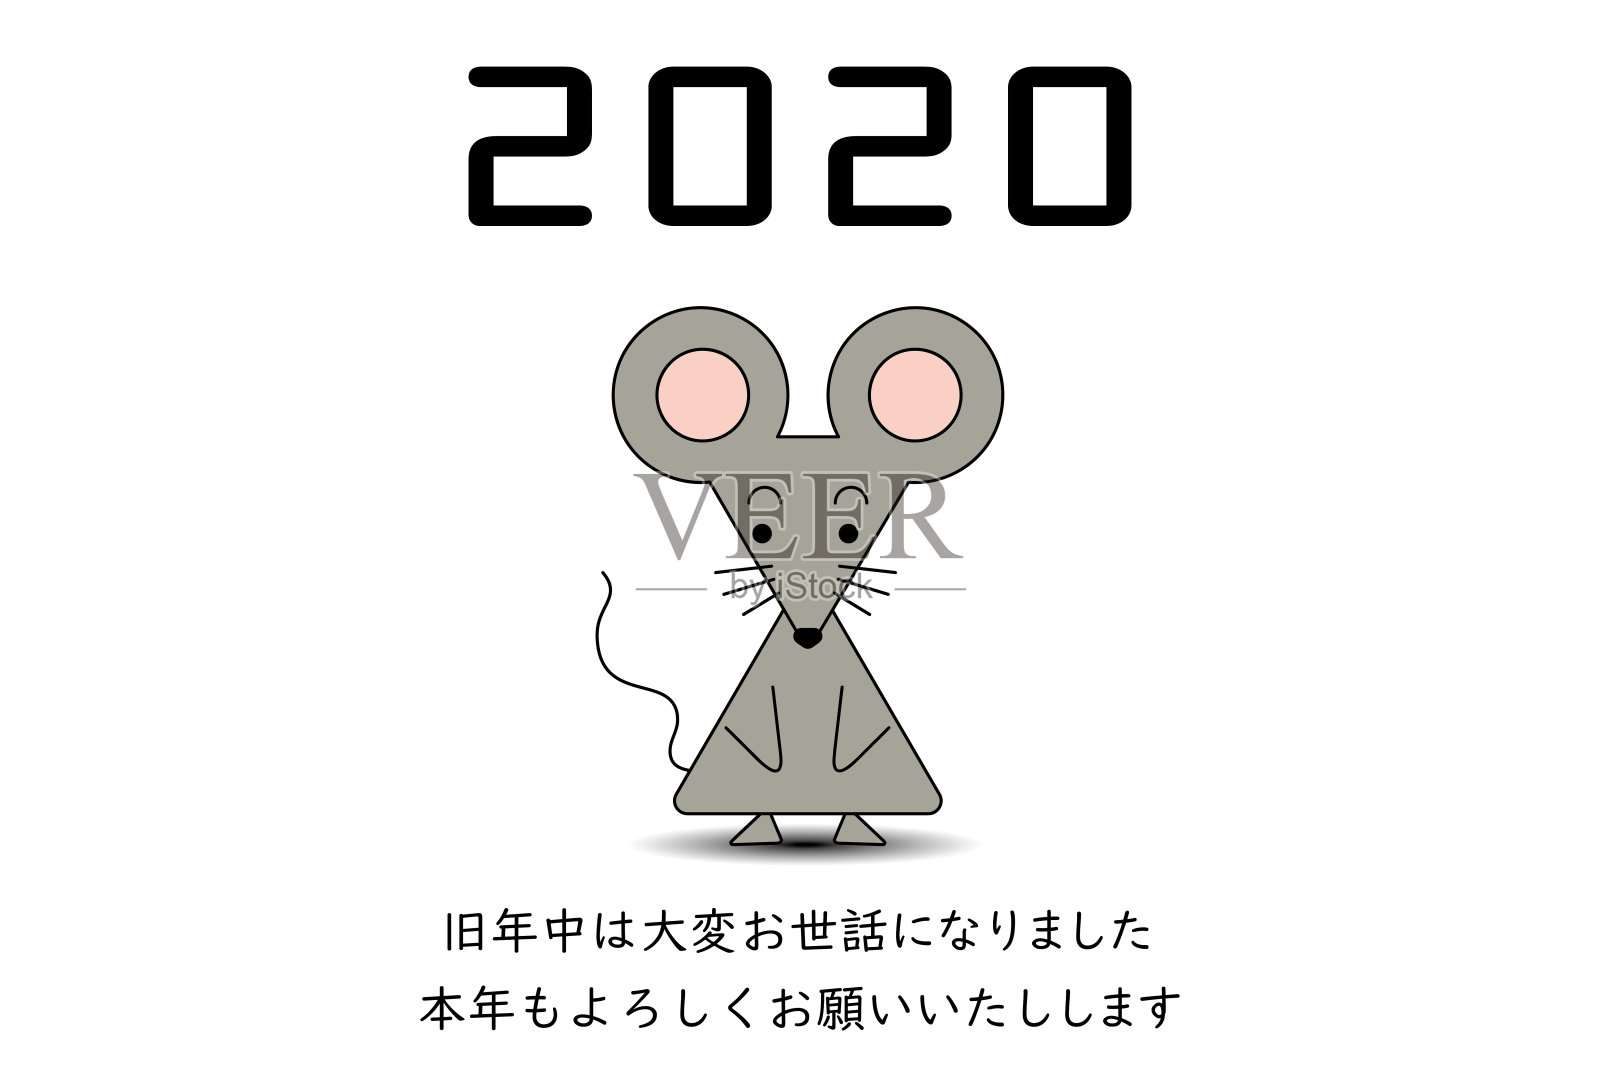 2020年的可爱老鼠贺年卡设计元素图片